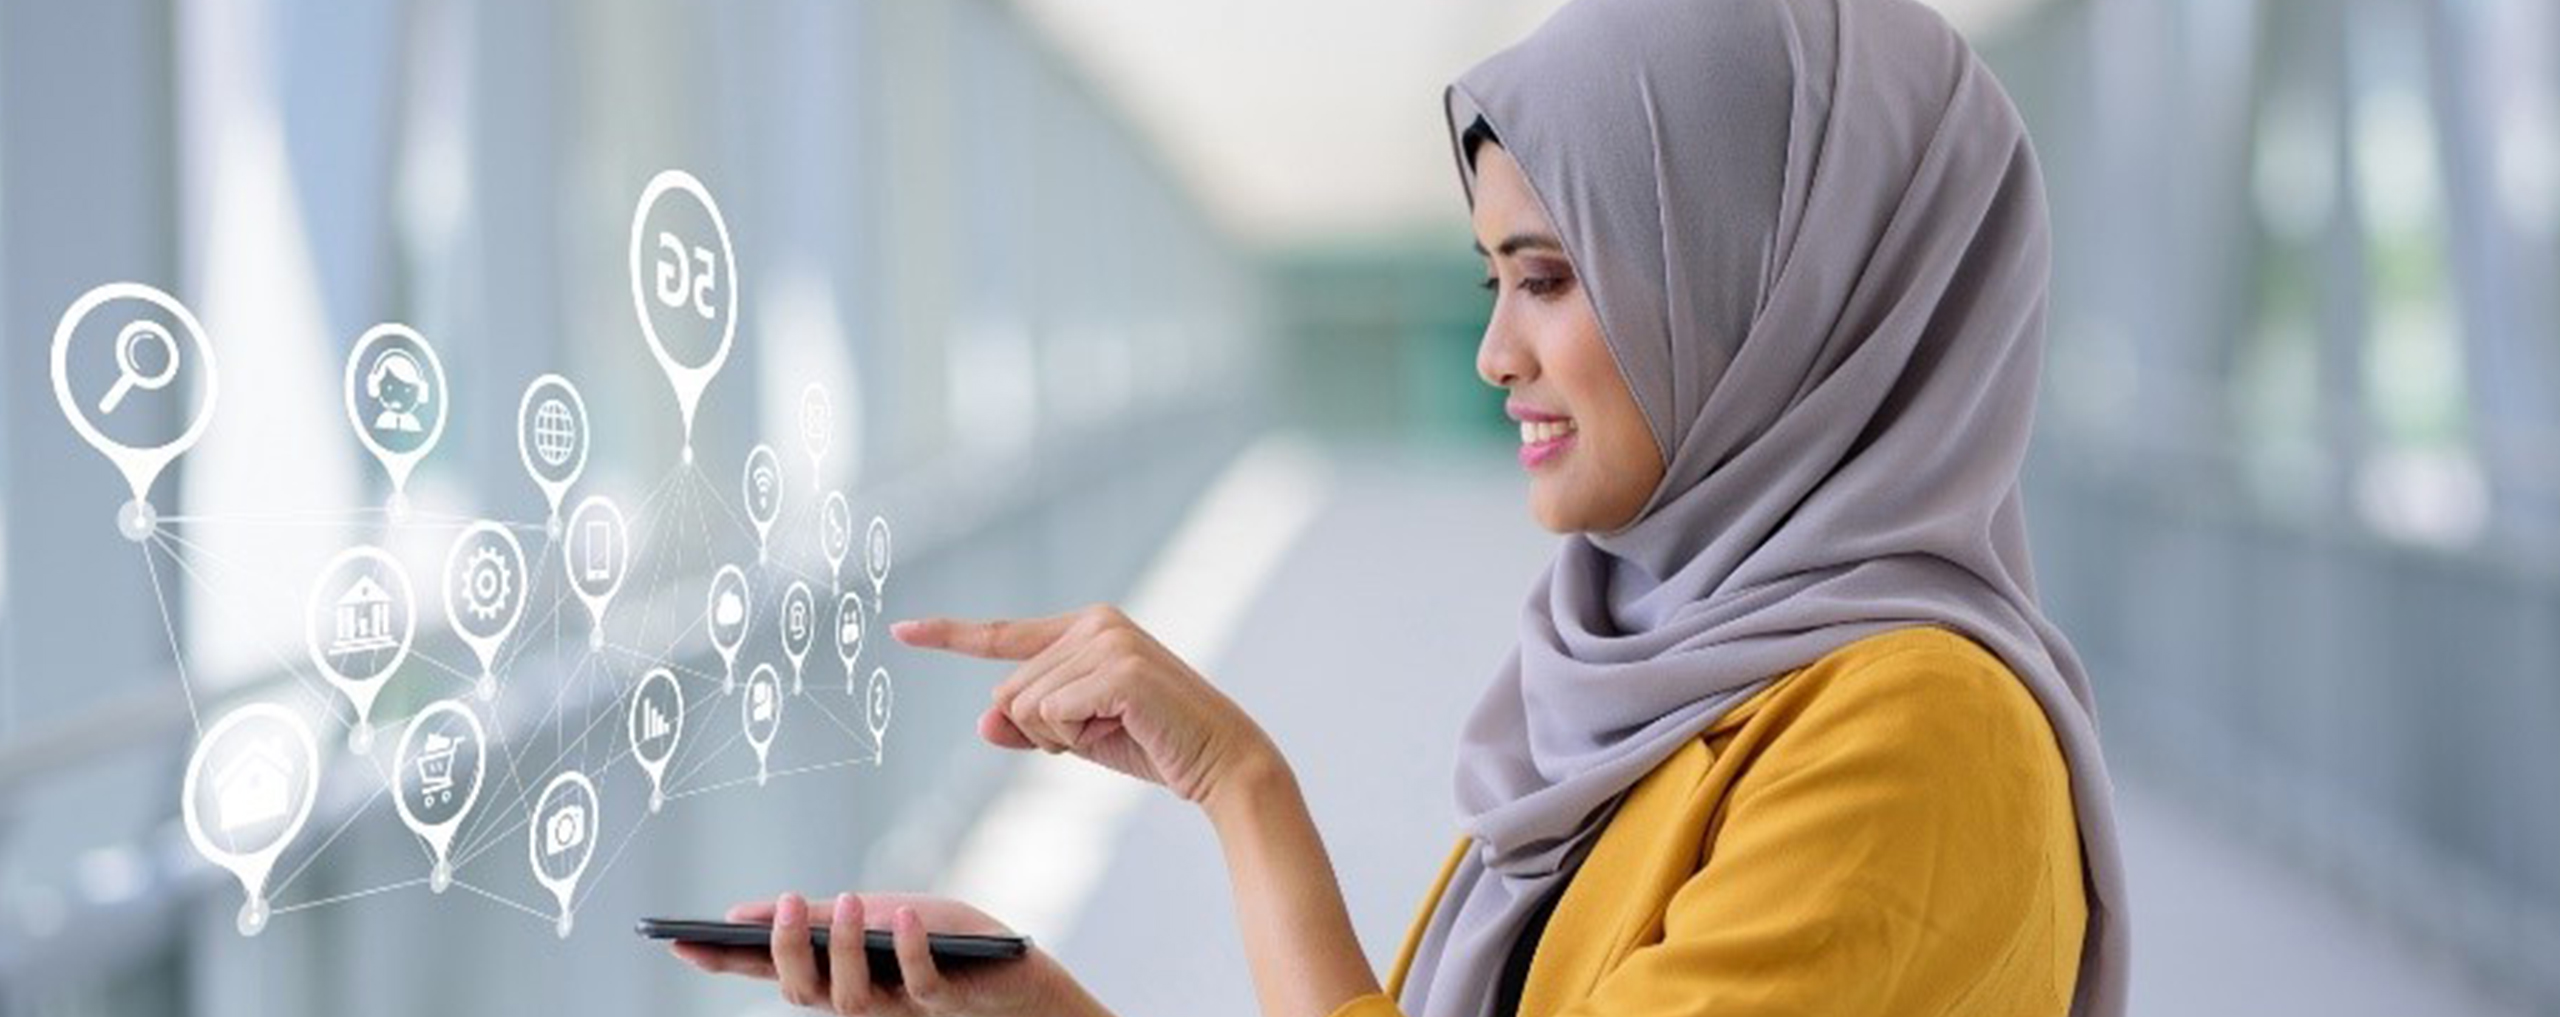 Une femme en hijab sélectionnant des icônes flottant au-dessus d’un smartphone.